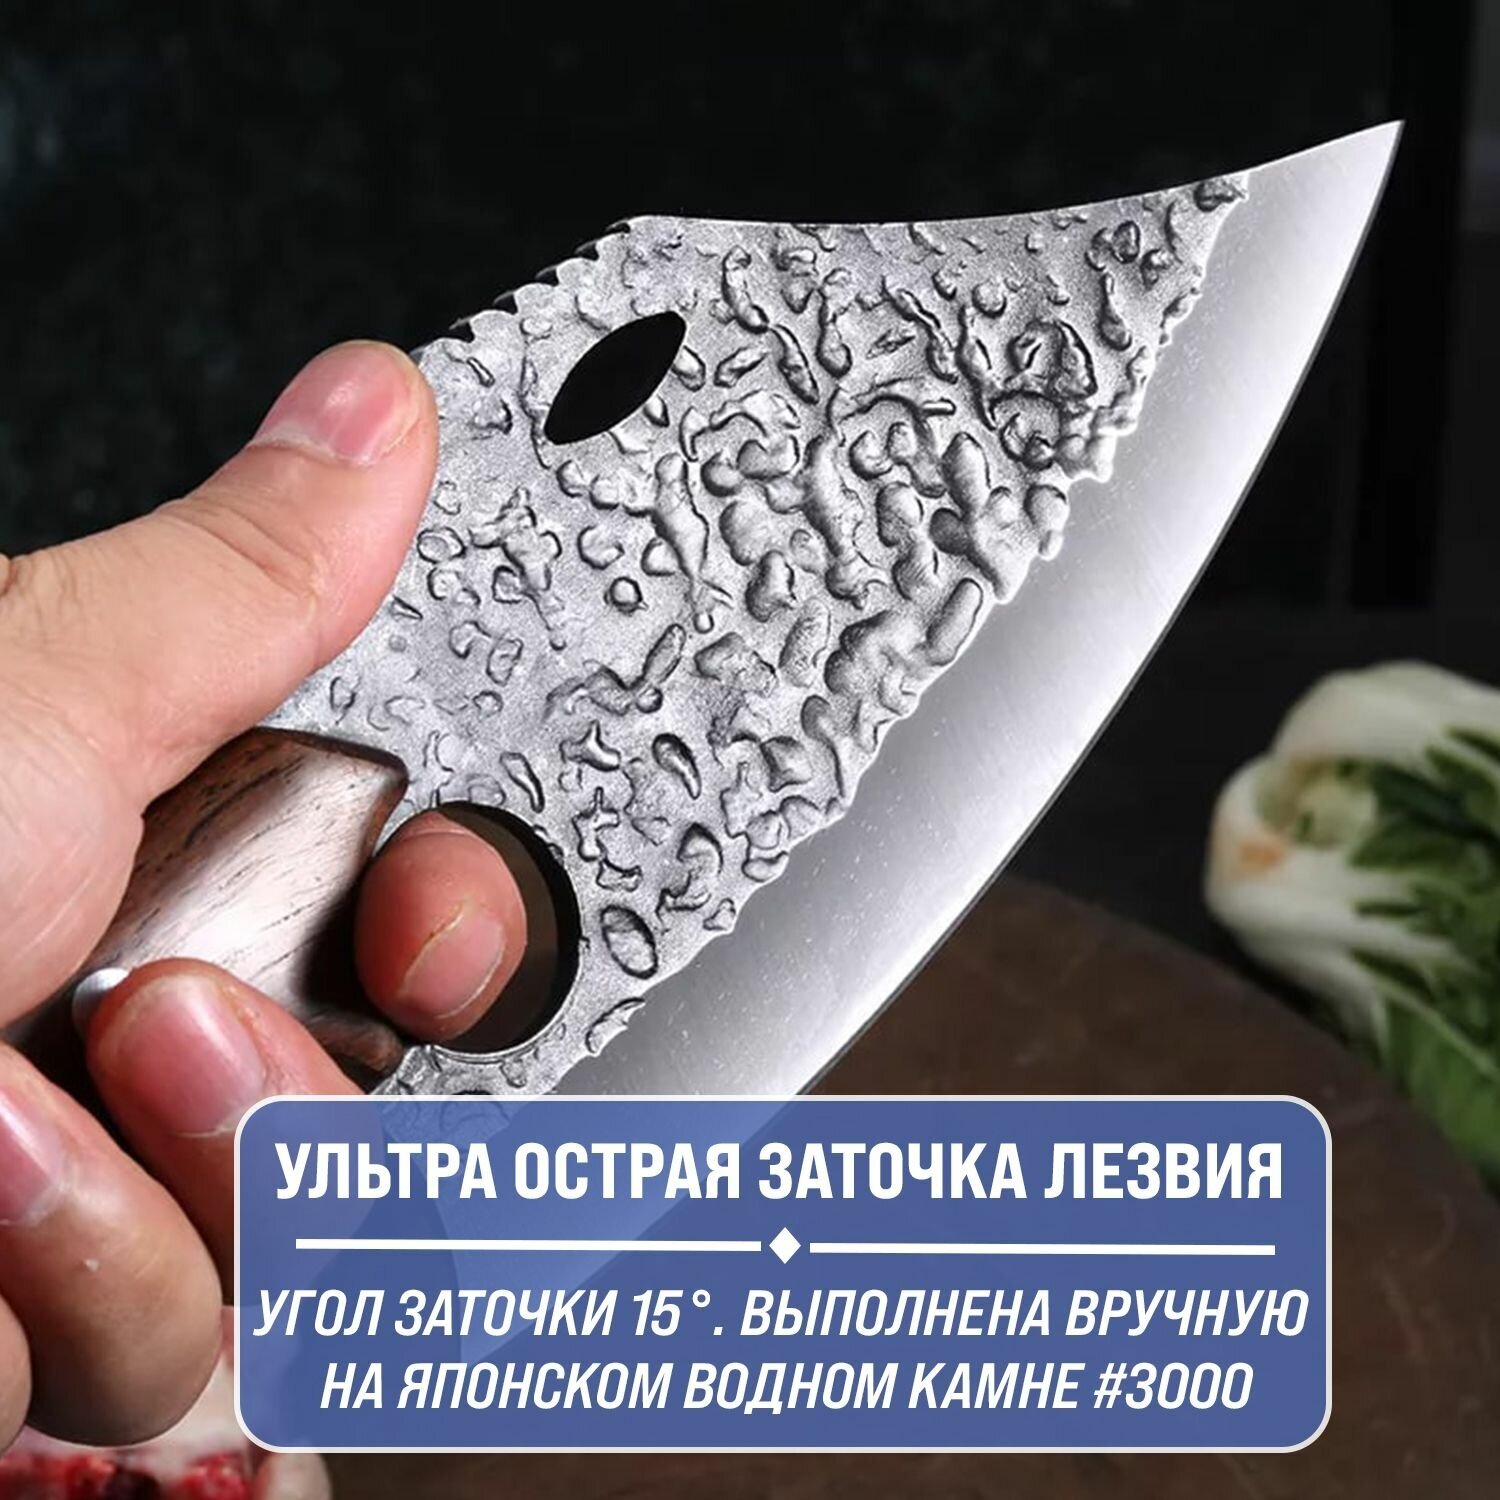 Японский кухонный нож - топорик Kimatsugi Hokori / Нож для разделки мяса / Японская сталь AUS-8 / Длина лезвия 17.5 см / С кожаными ножнами